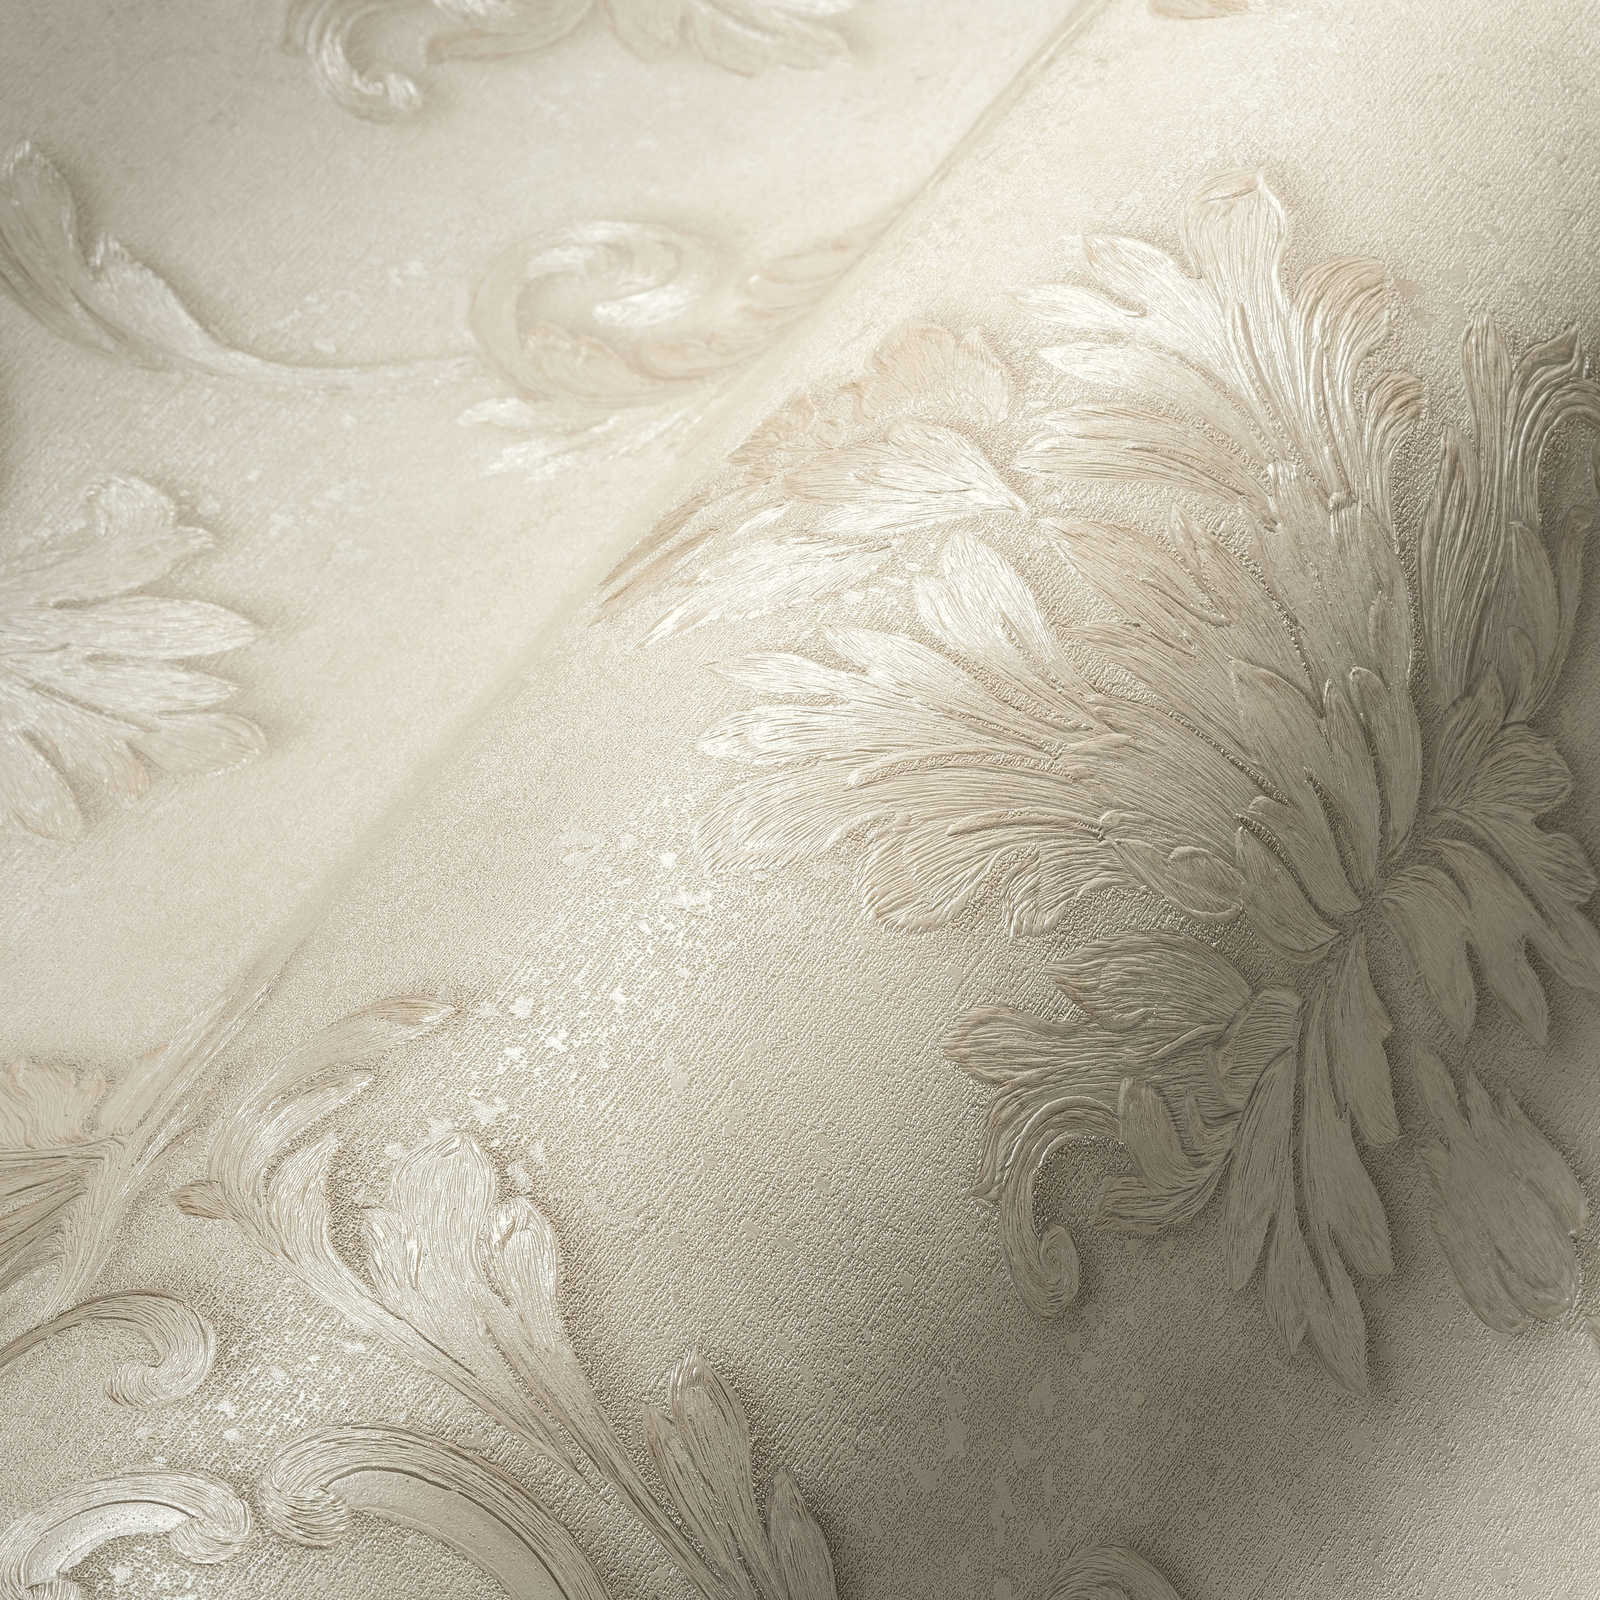             Papel pintado de diseño con adornos florales y efecto metálico - bronce, crema
        